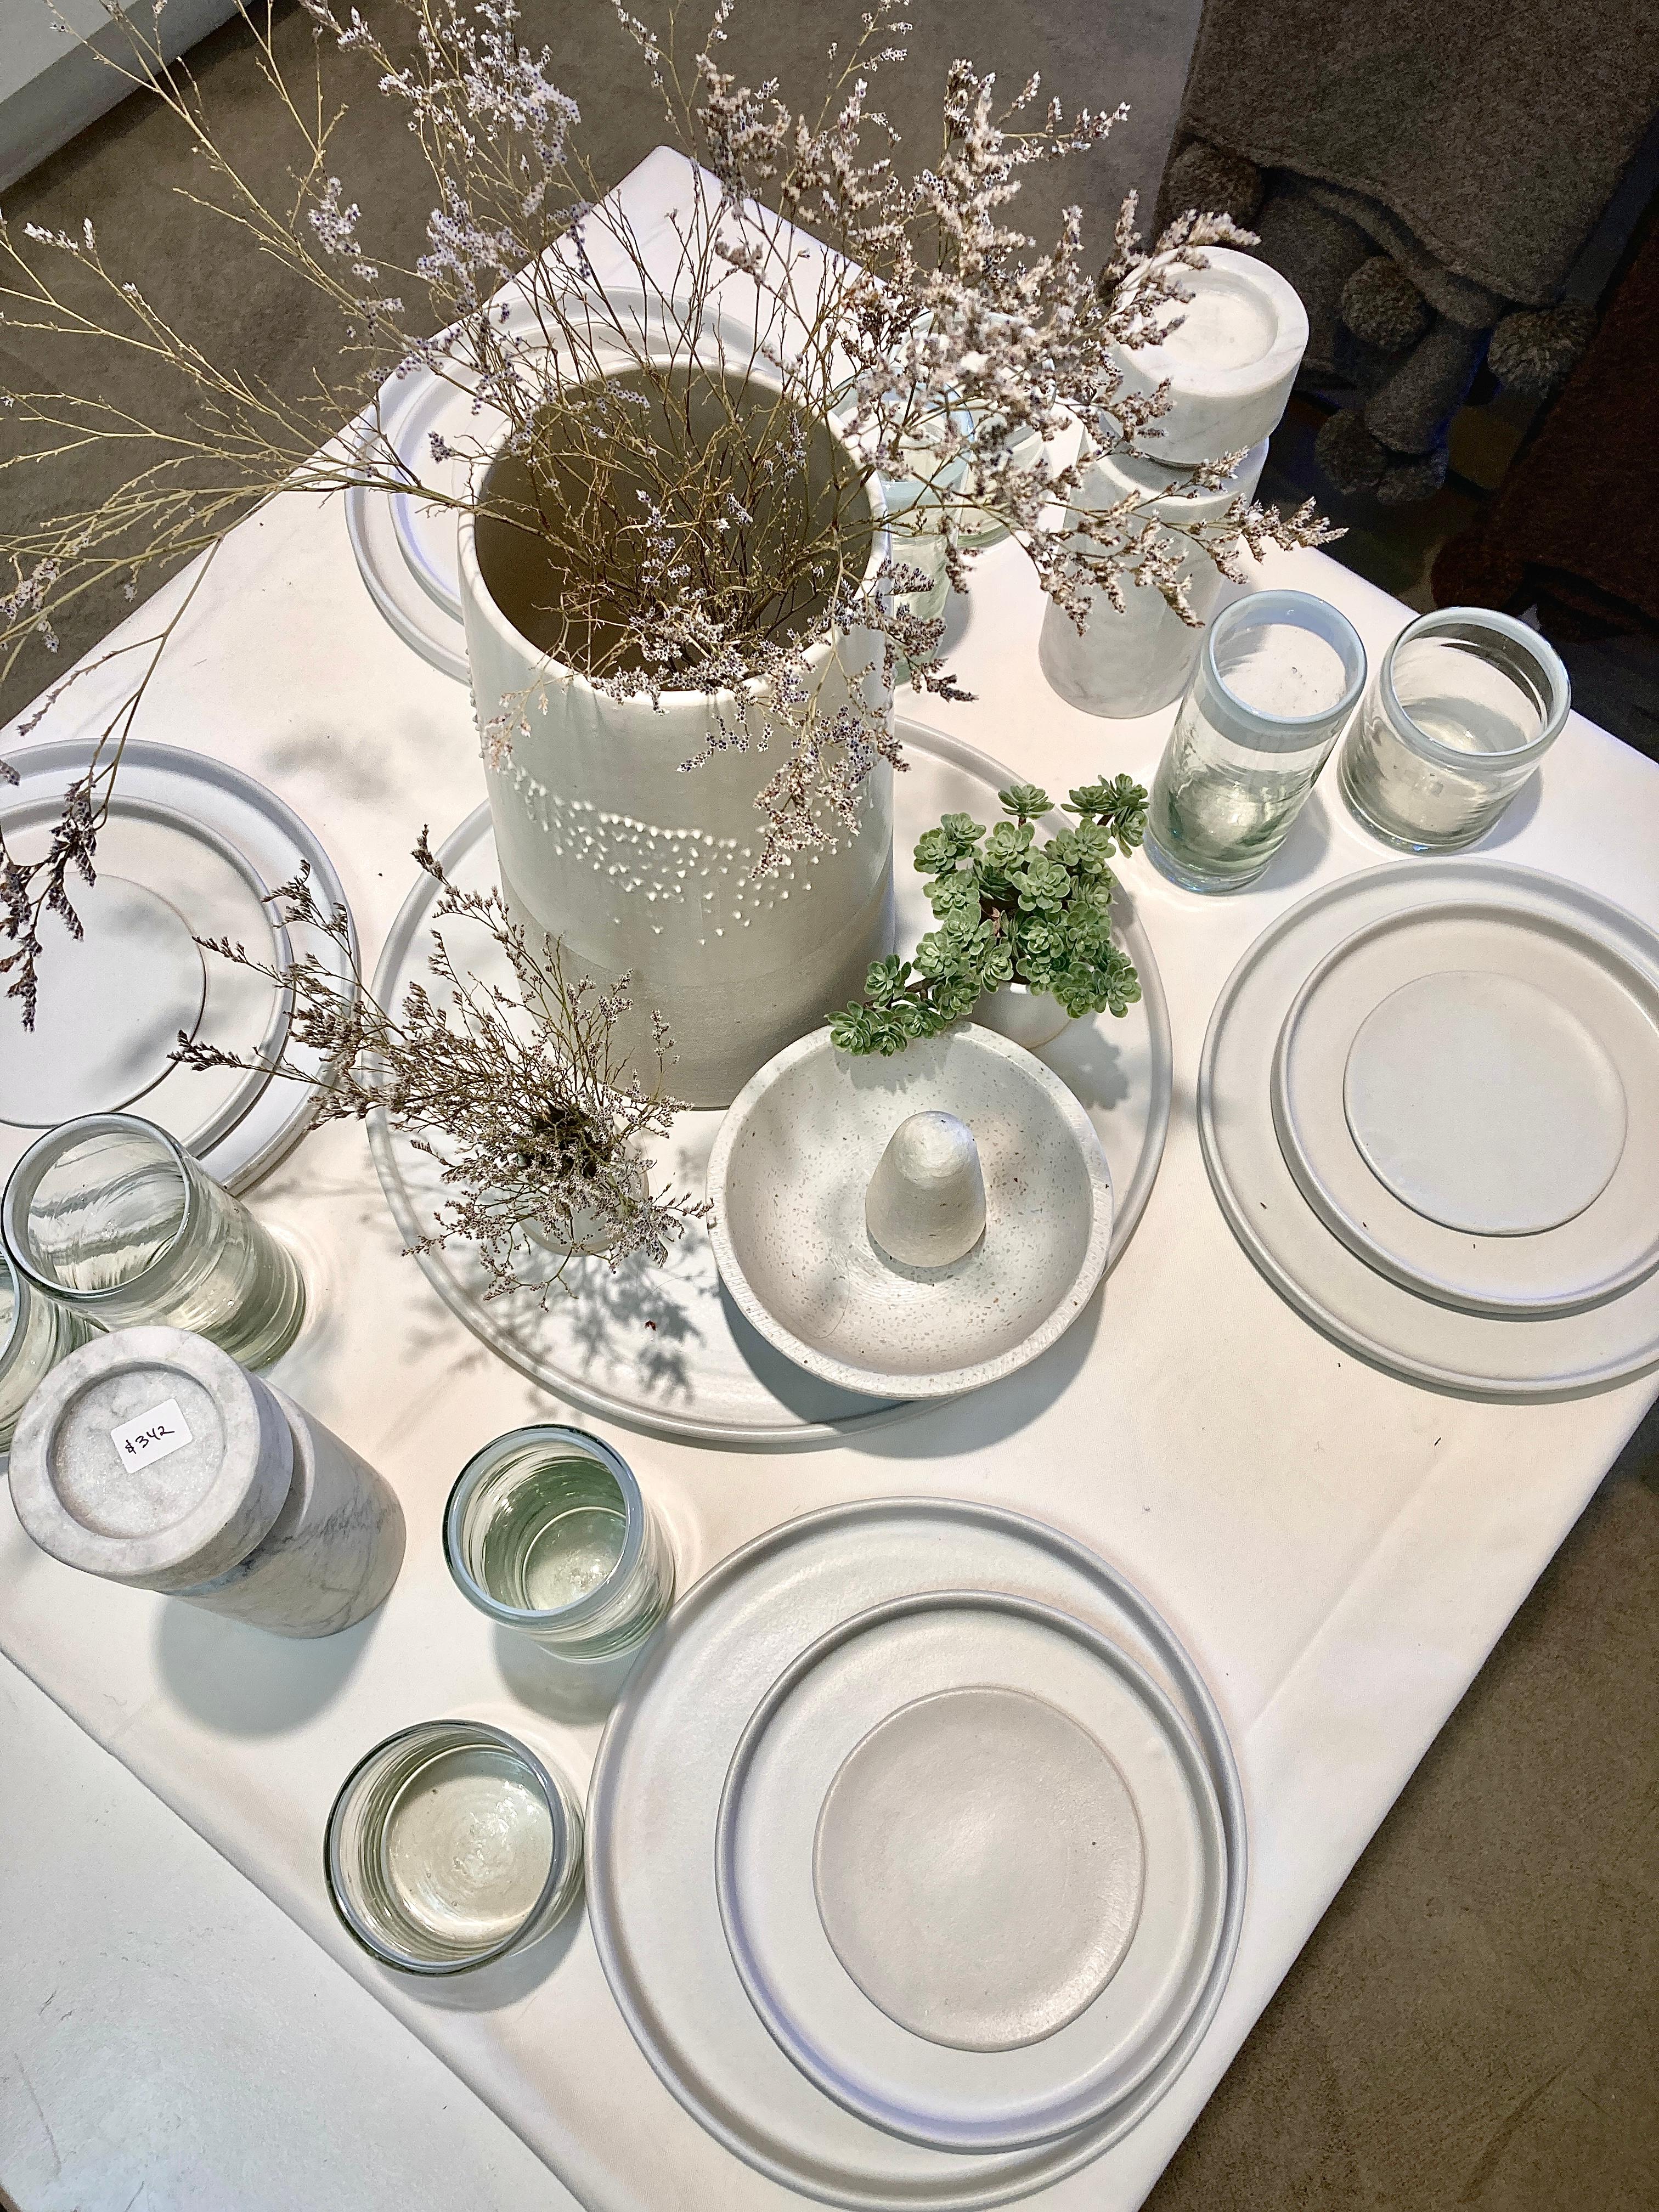 Diese handgefertigten und handbemalten Keramiken aus einem der Mutterländer, Portugal, verleihen Ihrem Tisch einen modernen Touch und sind perfekt zu kombinieren. Die matt glasierten Teller sind in Schwarz oder Weiß und in zwei Größen